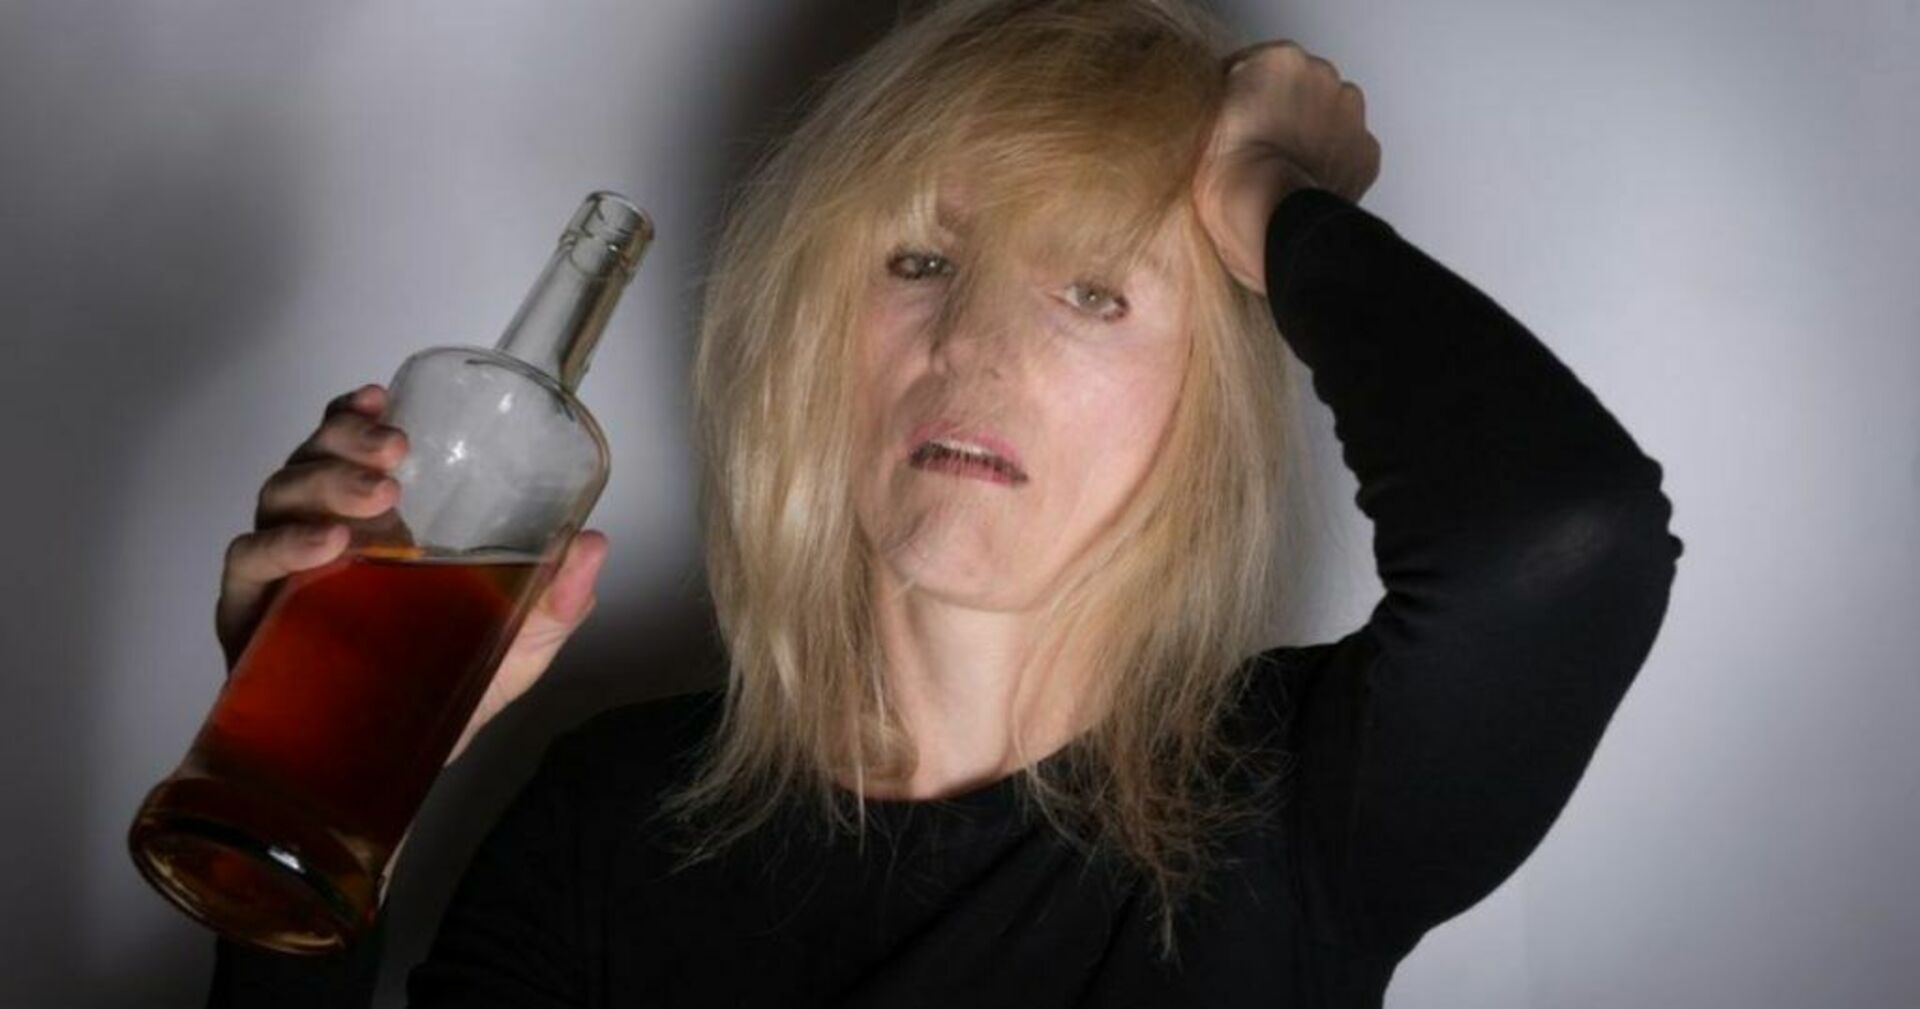 Баба алкашка. Пьющая женщина. Алкоголизм у женщин.